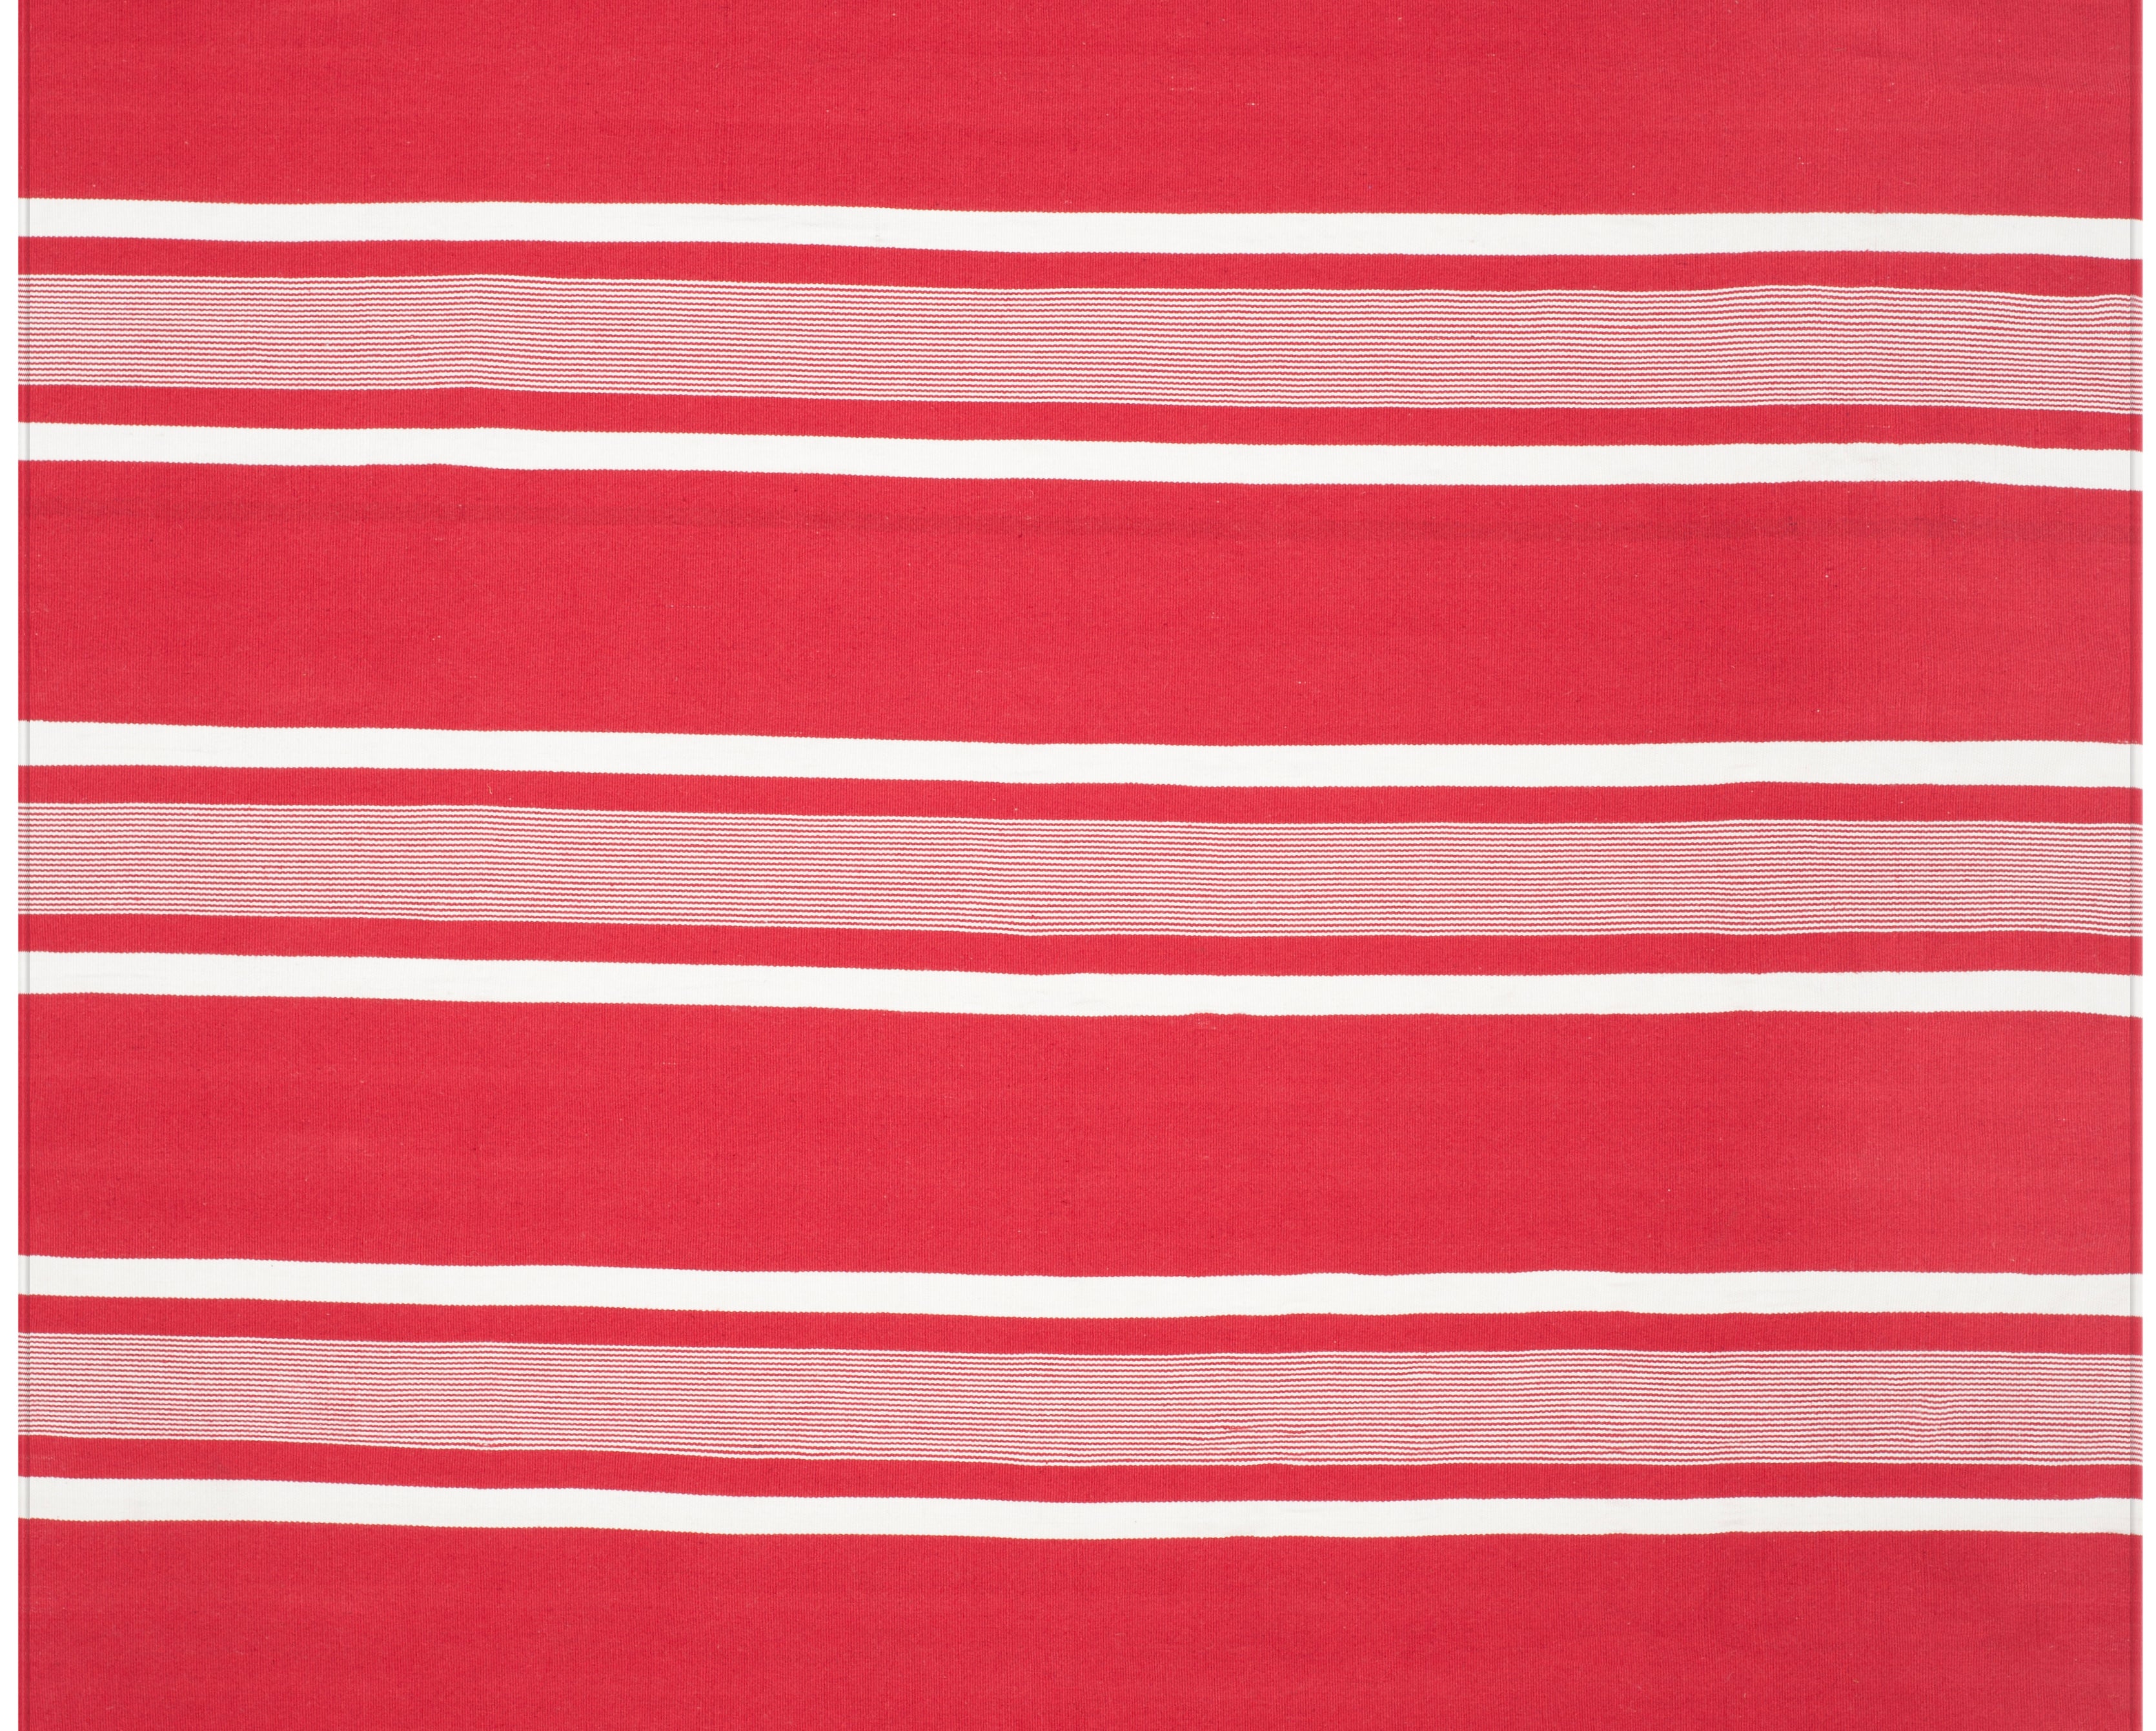 Lauren Ralph Lauren Hanover Stripe Rug, LRL2461 - RED